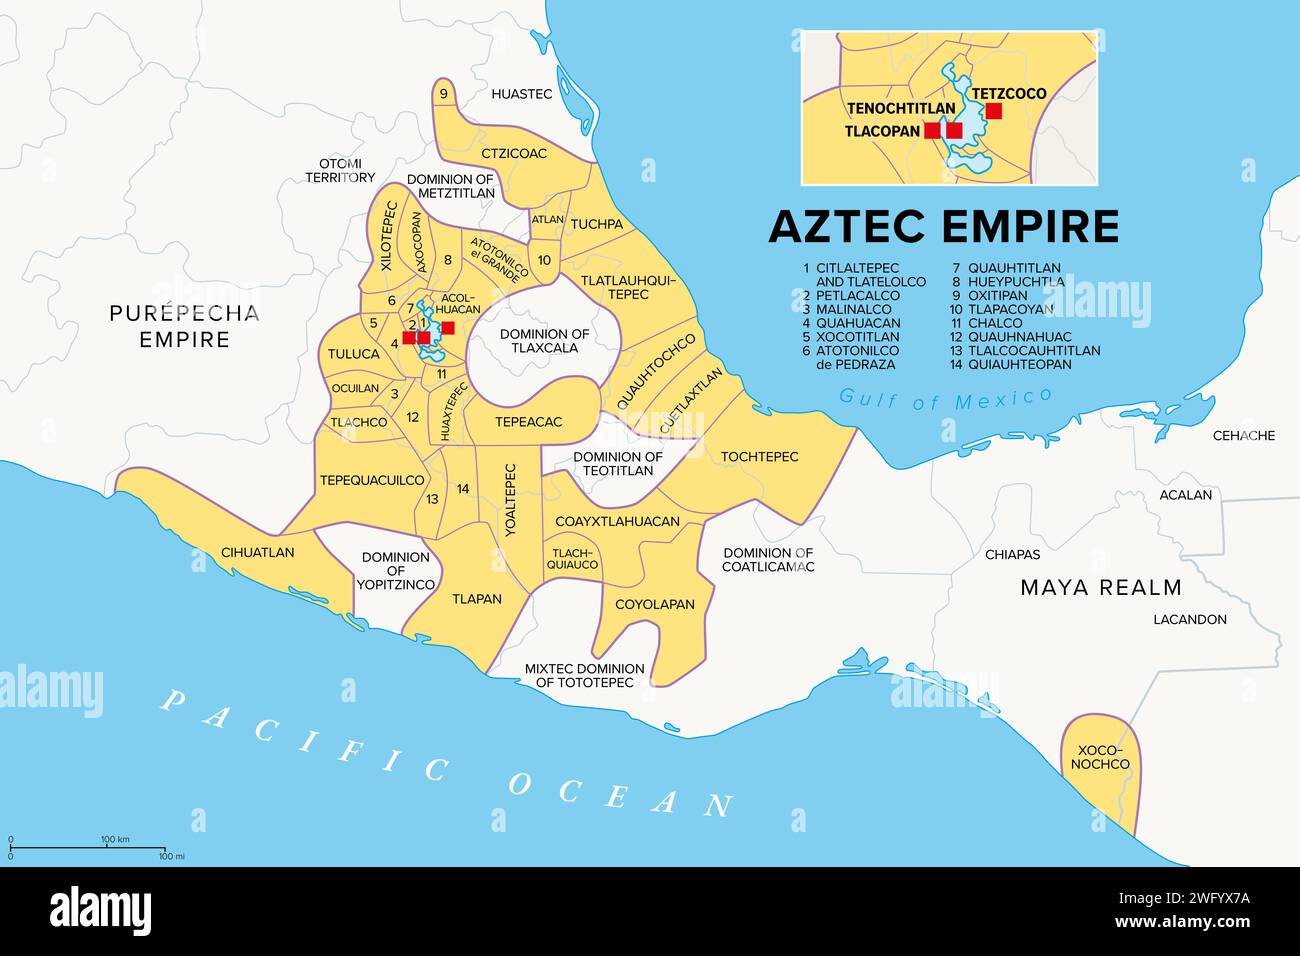 Impero Azteco con province tributarie, mappa storica. Estensione massima di Triple Alliance Tenochtitlan, Tetzcoco e Tlacopan al tempo della conqu spagnola Foto Stock